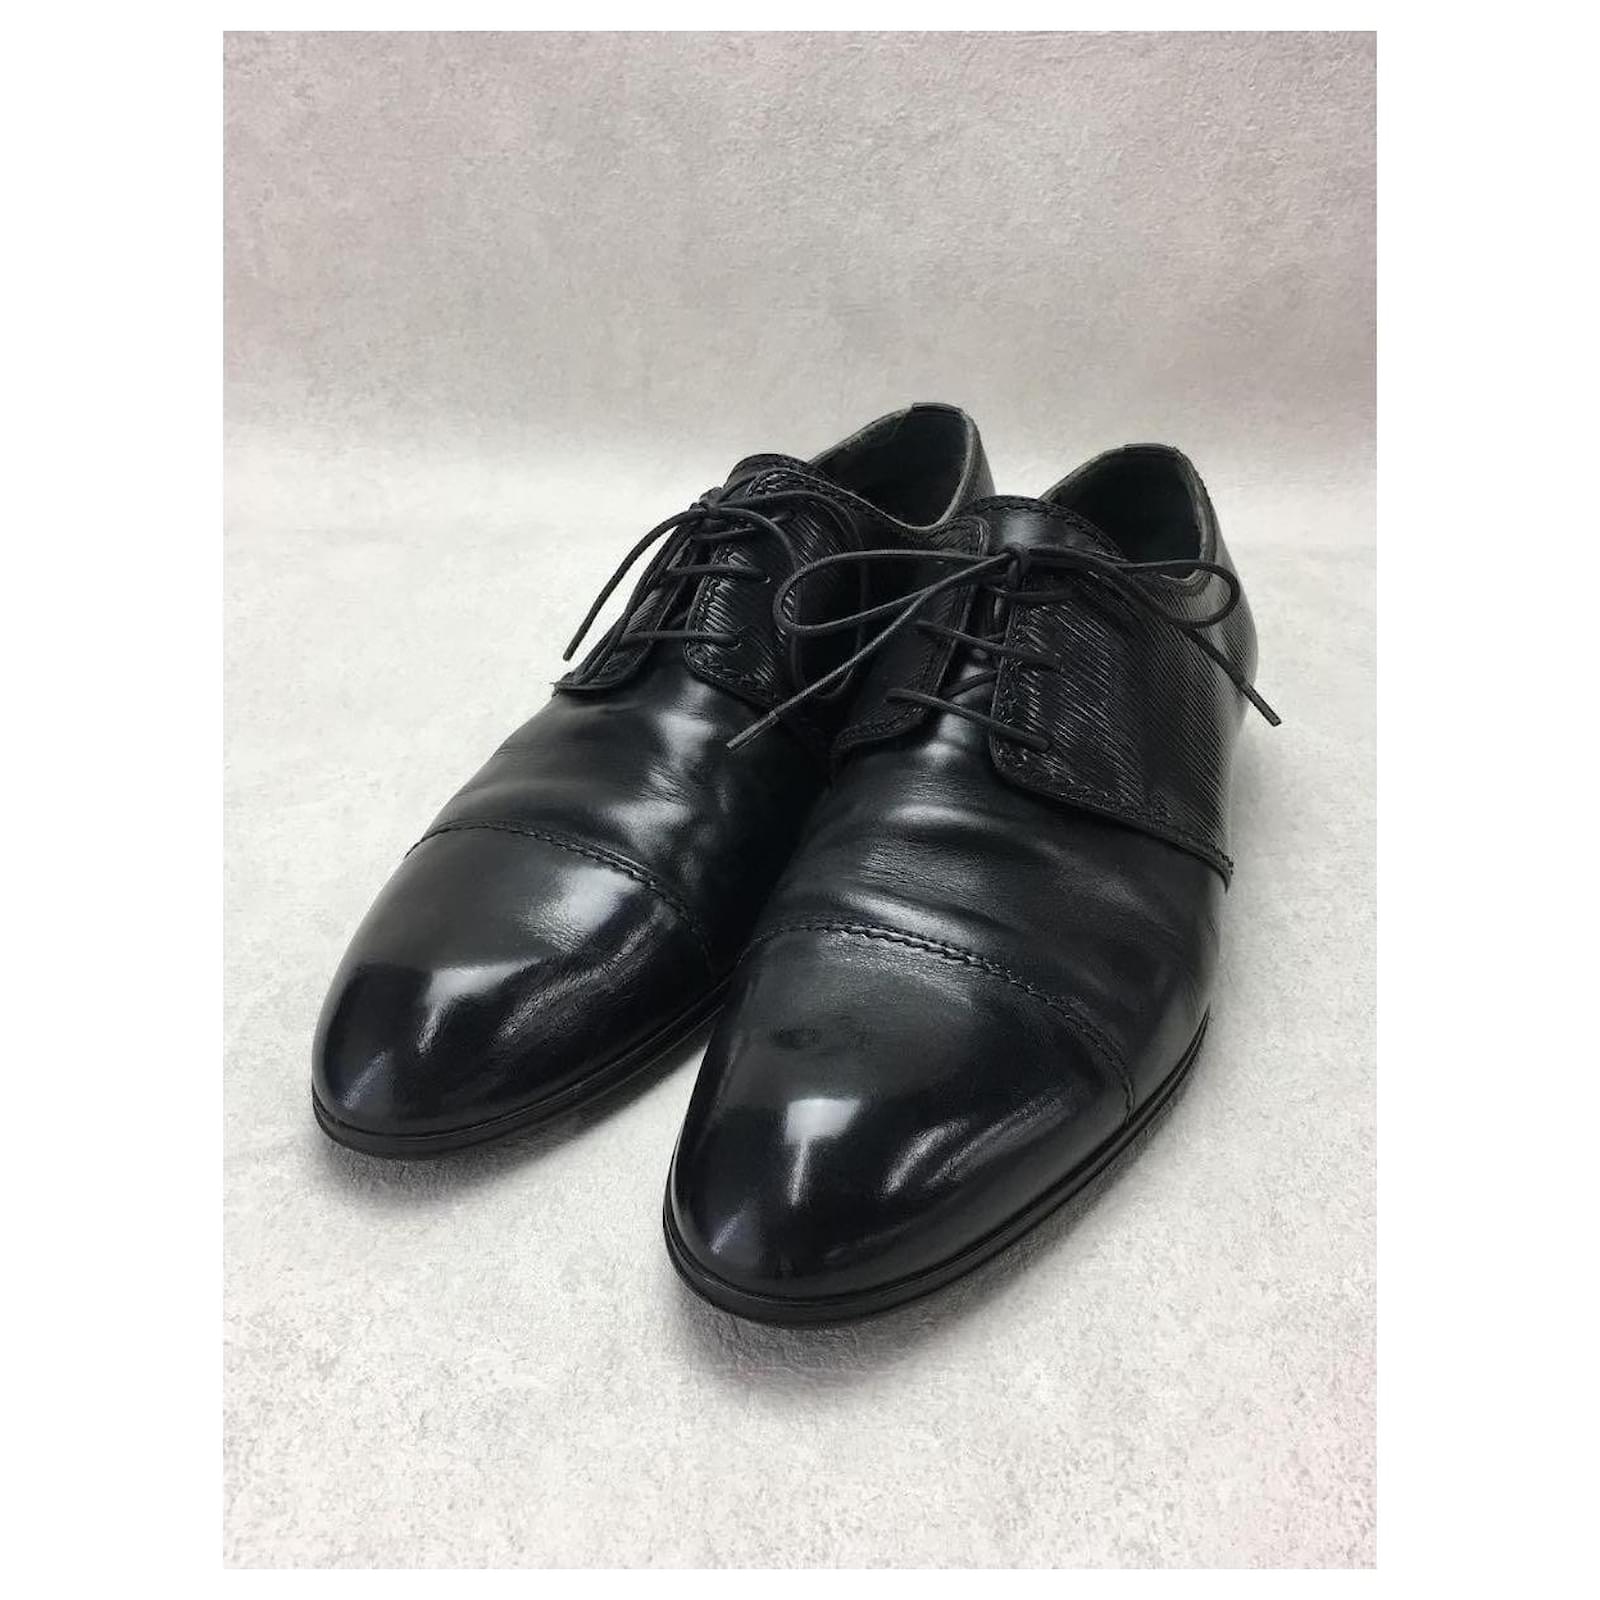 LOUIS VUITTON Zapatos de vestir / EE. UU.7.5 / BLK / Cuero Negro